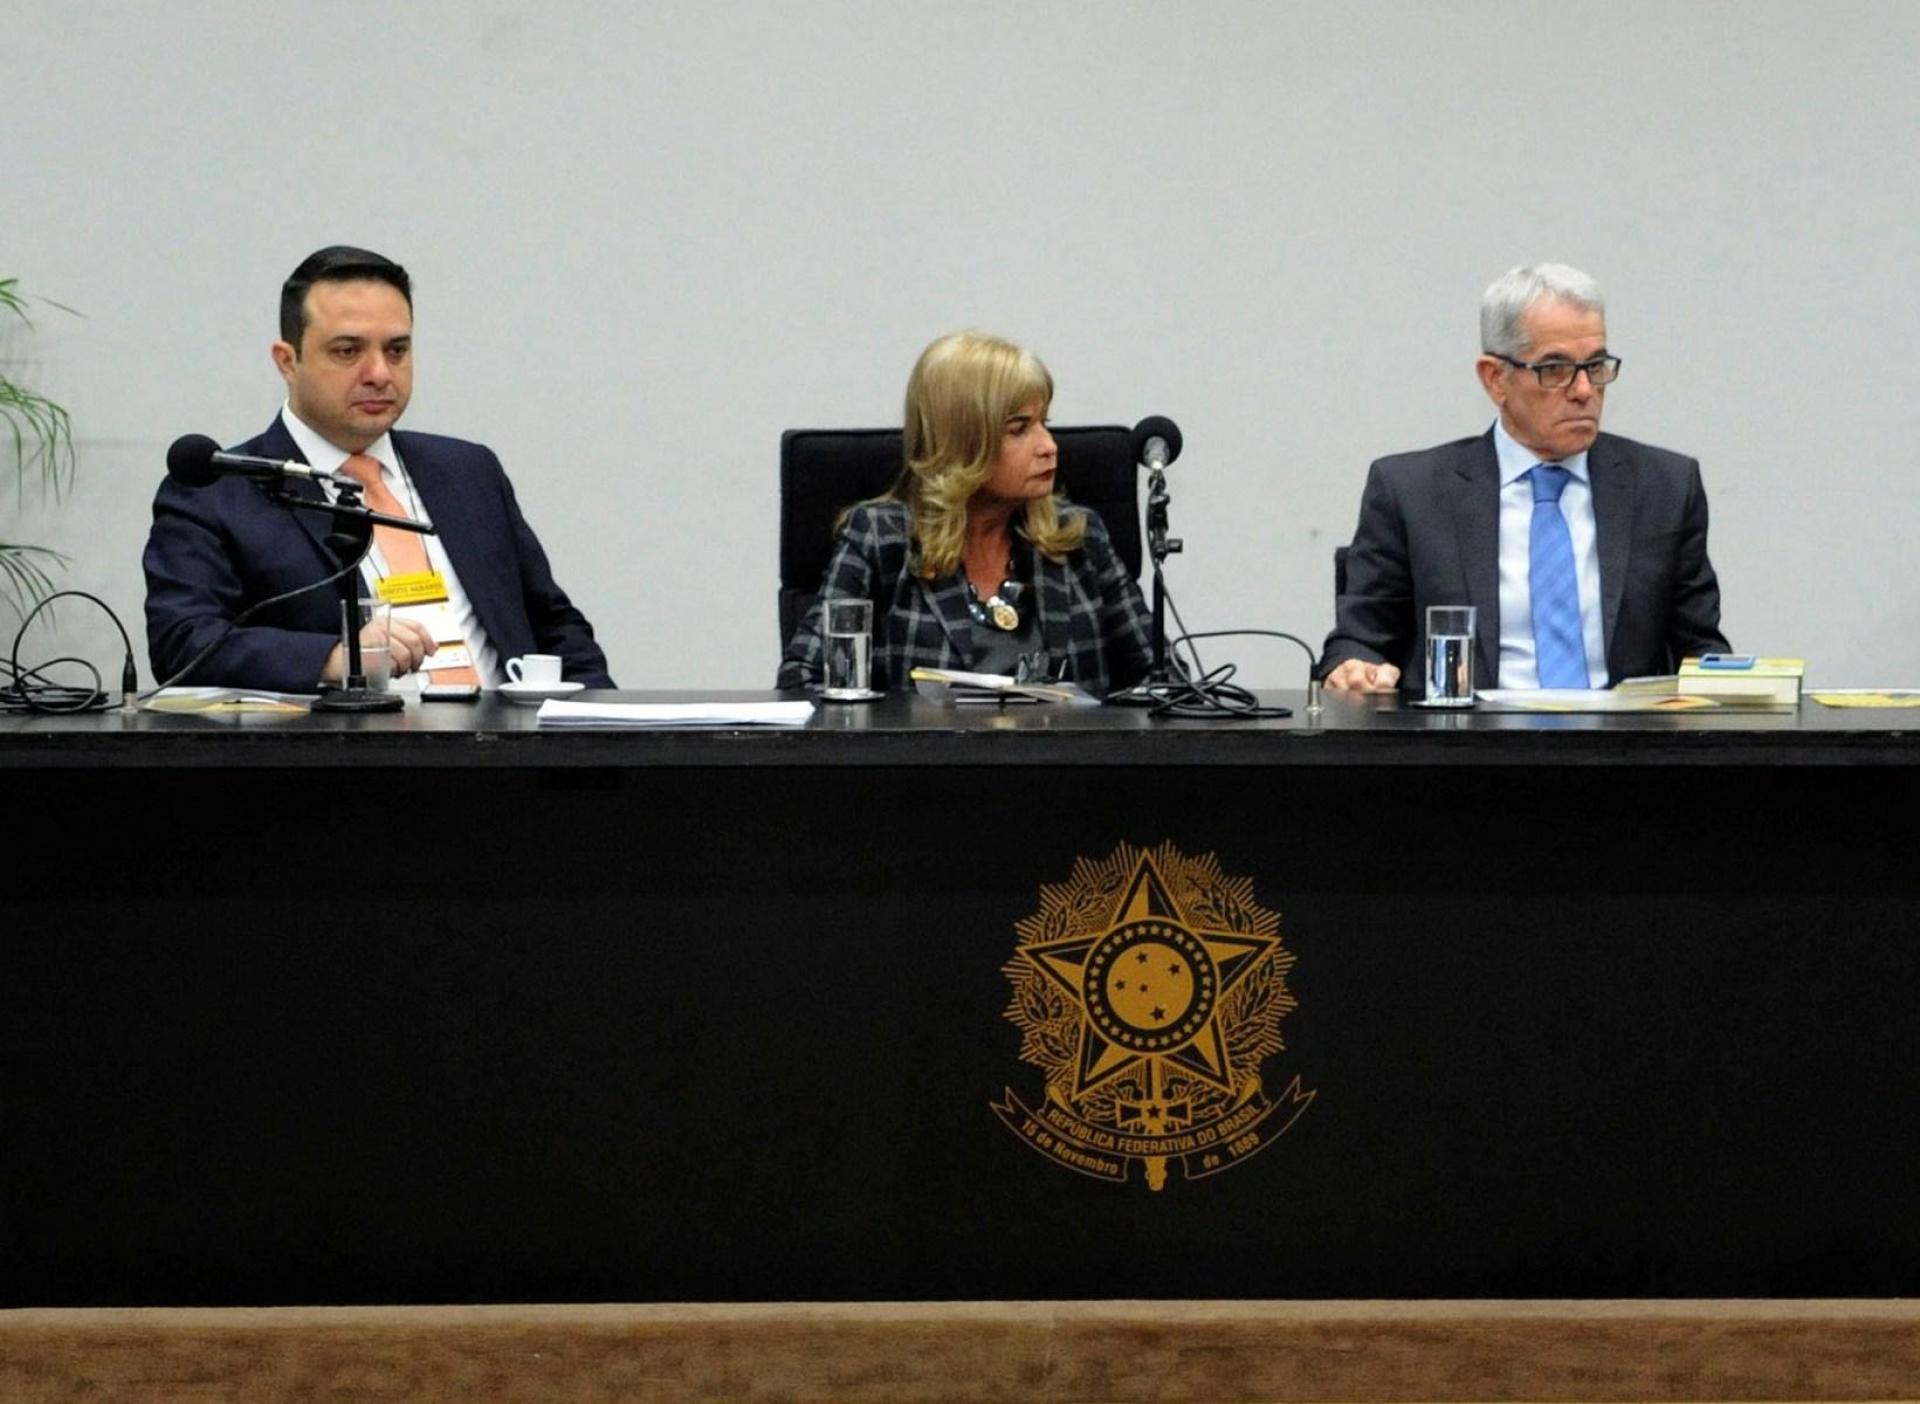 IAB promove o II Congresso Nacional de Direito Agrário, dia 22/8, na Câmara dos Deputados - (Rd: Pio da Silva Cuiabá)